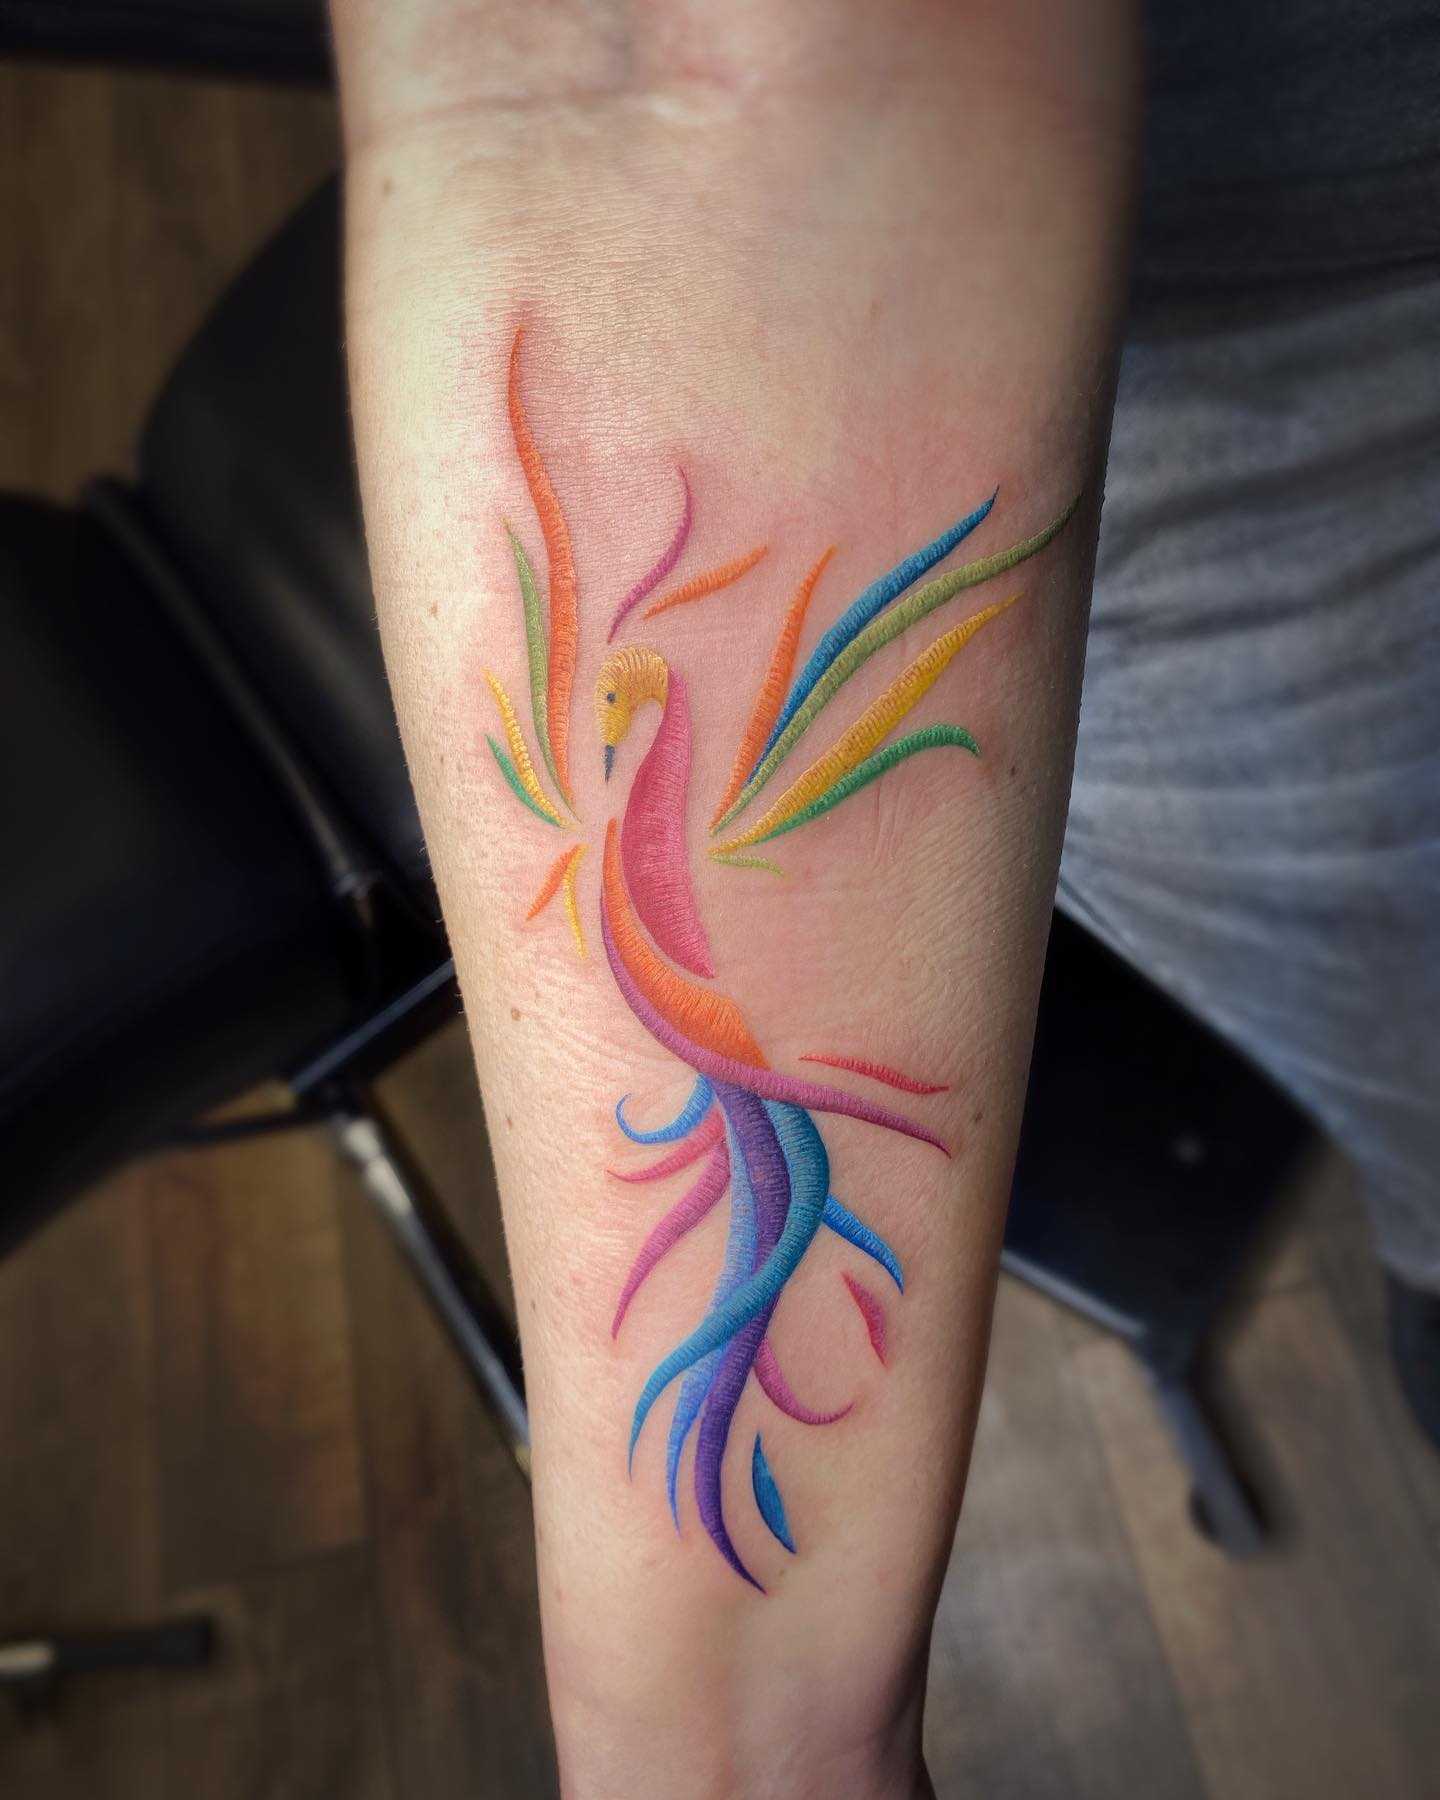 Abstract phoenix stitch tattoo on wrist